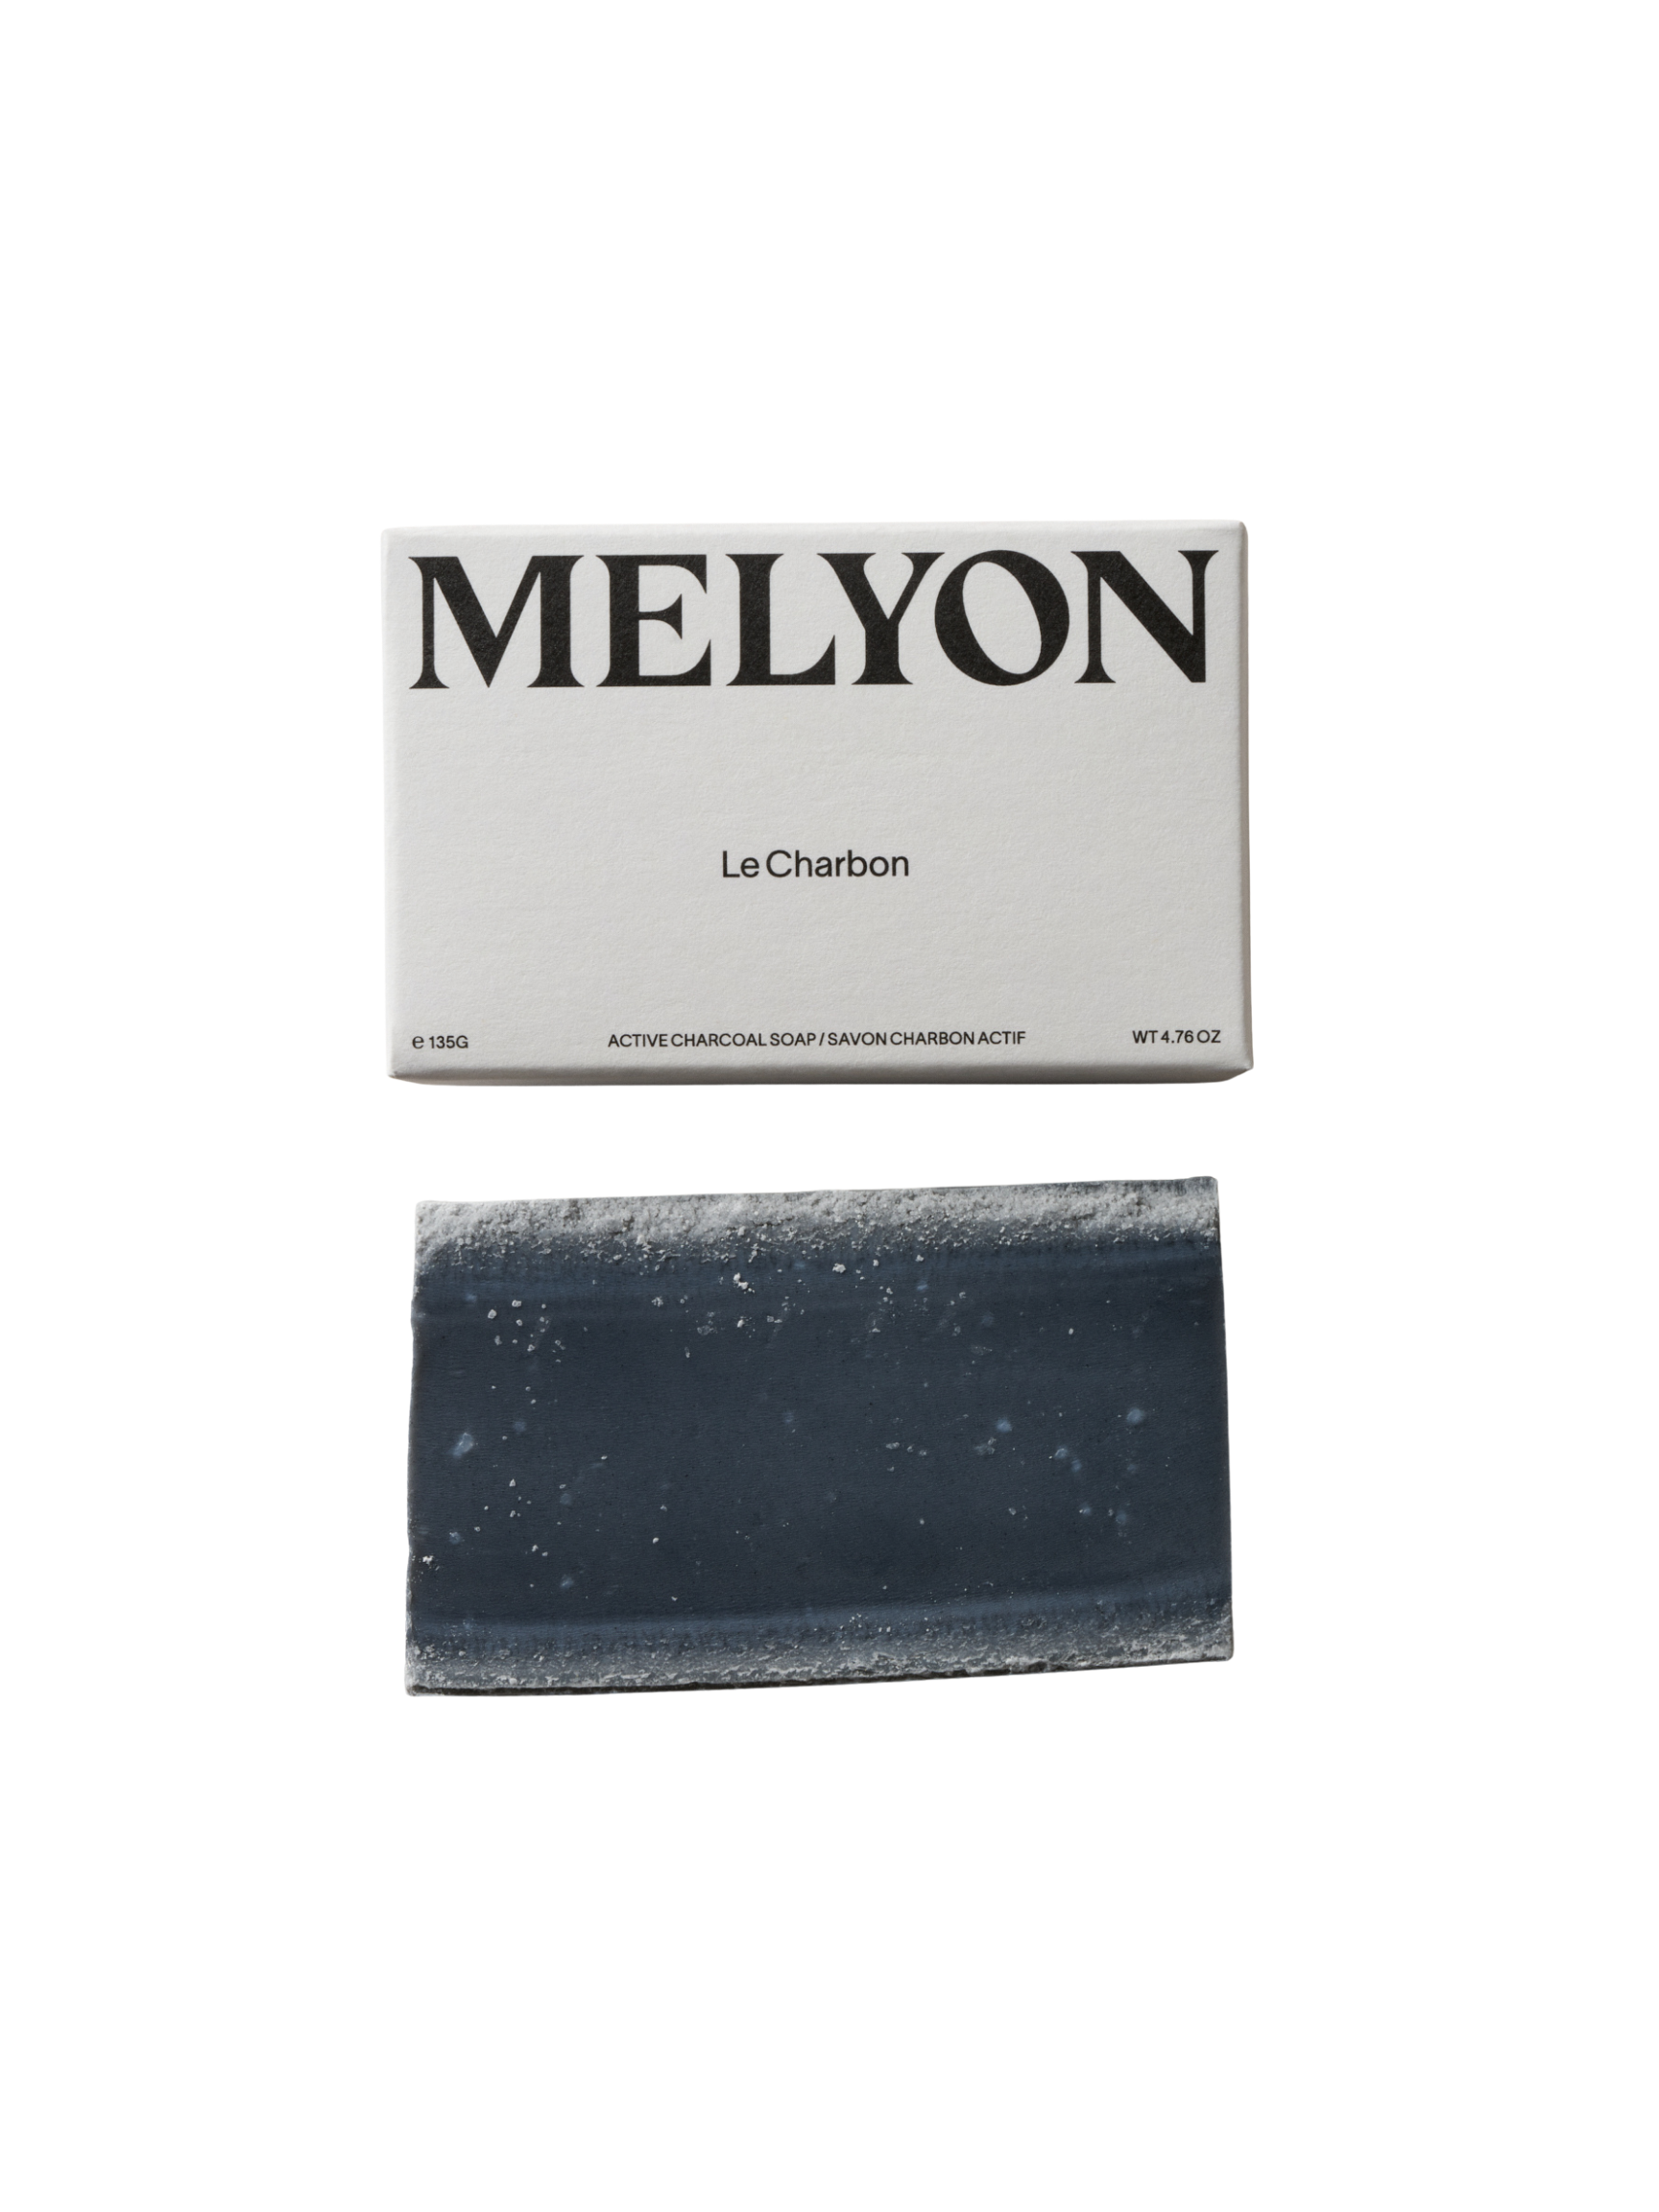 MELYON Le Charbon Soap 135g, Le Charbon Soap, Exfoliating Bar Soap, MELYON, PourHommies